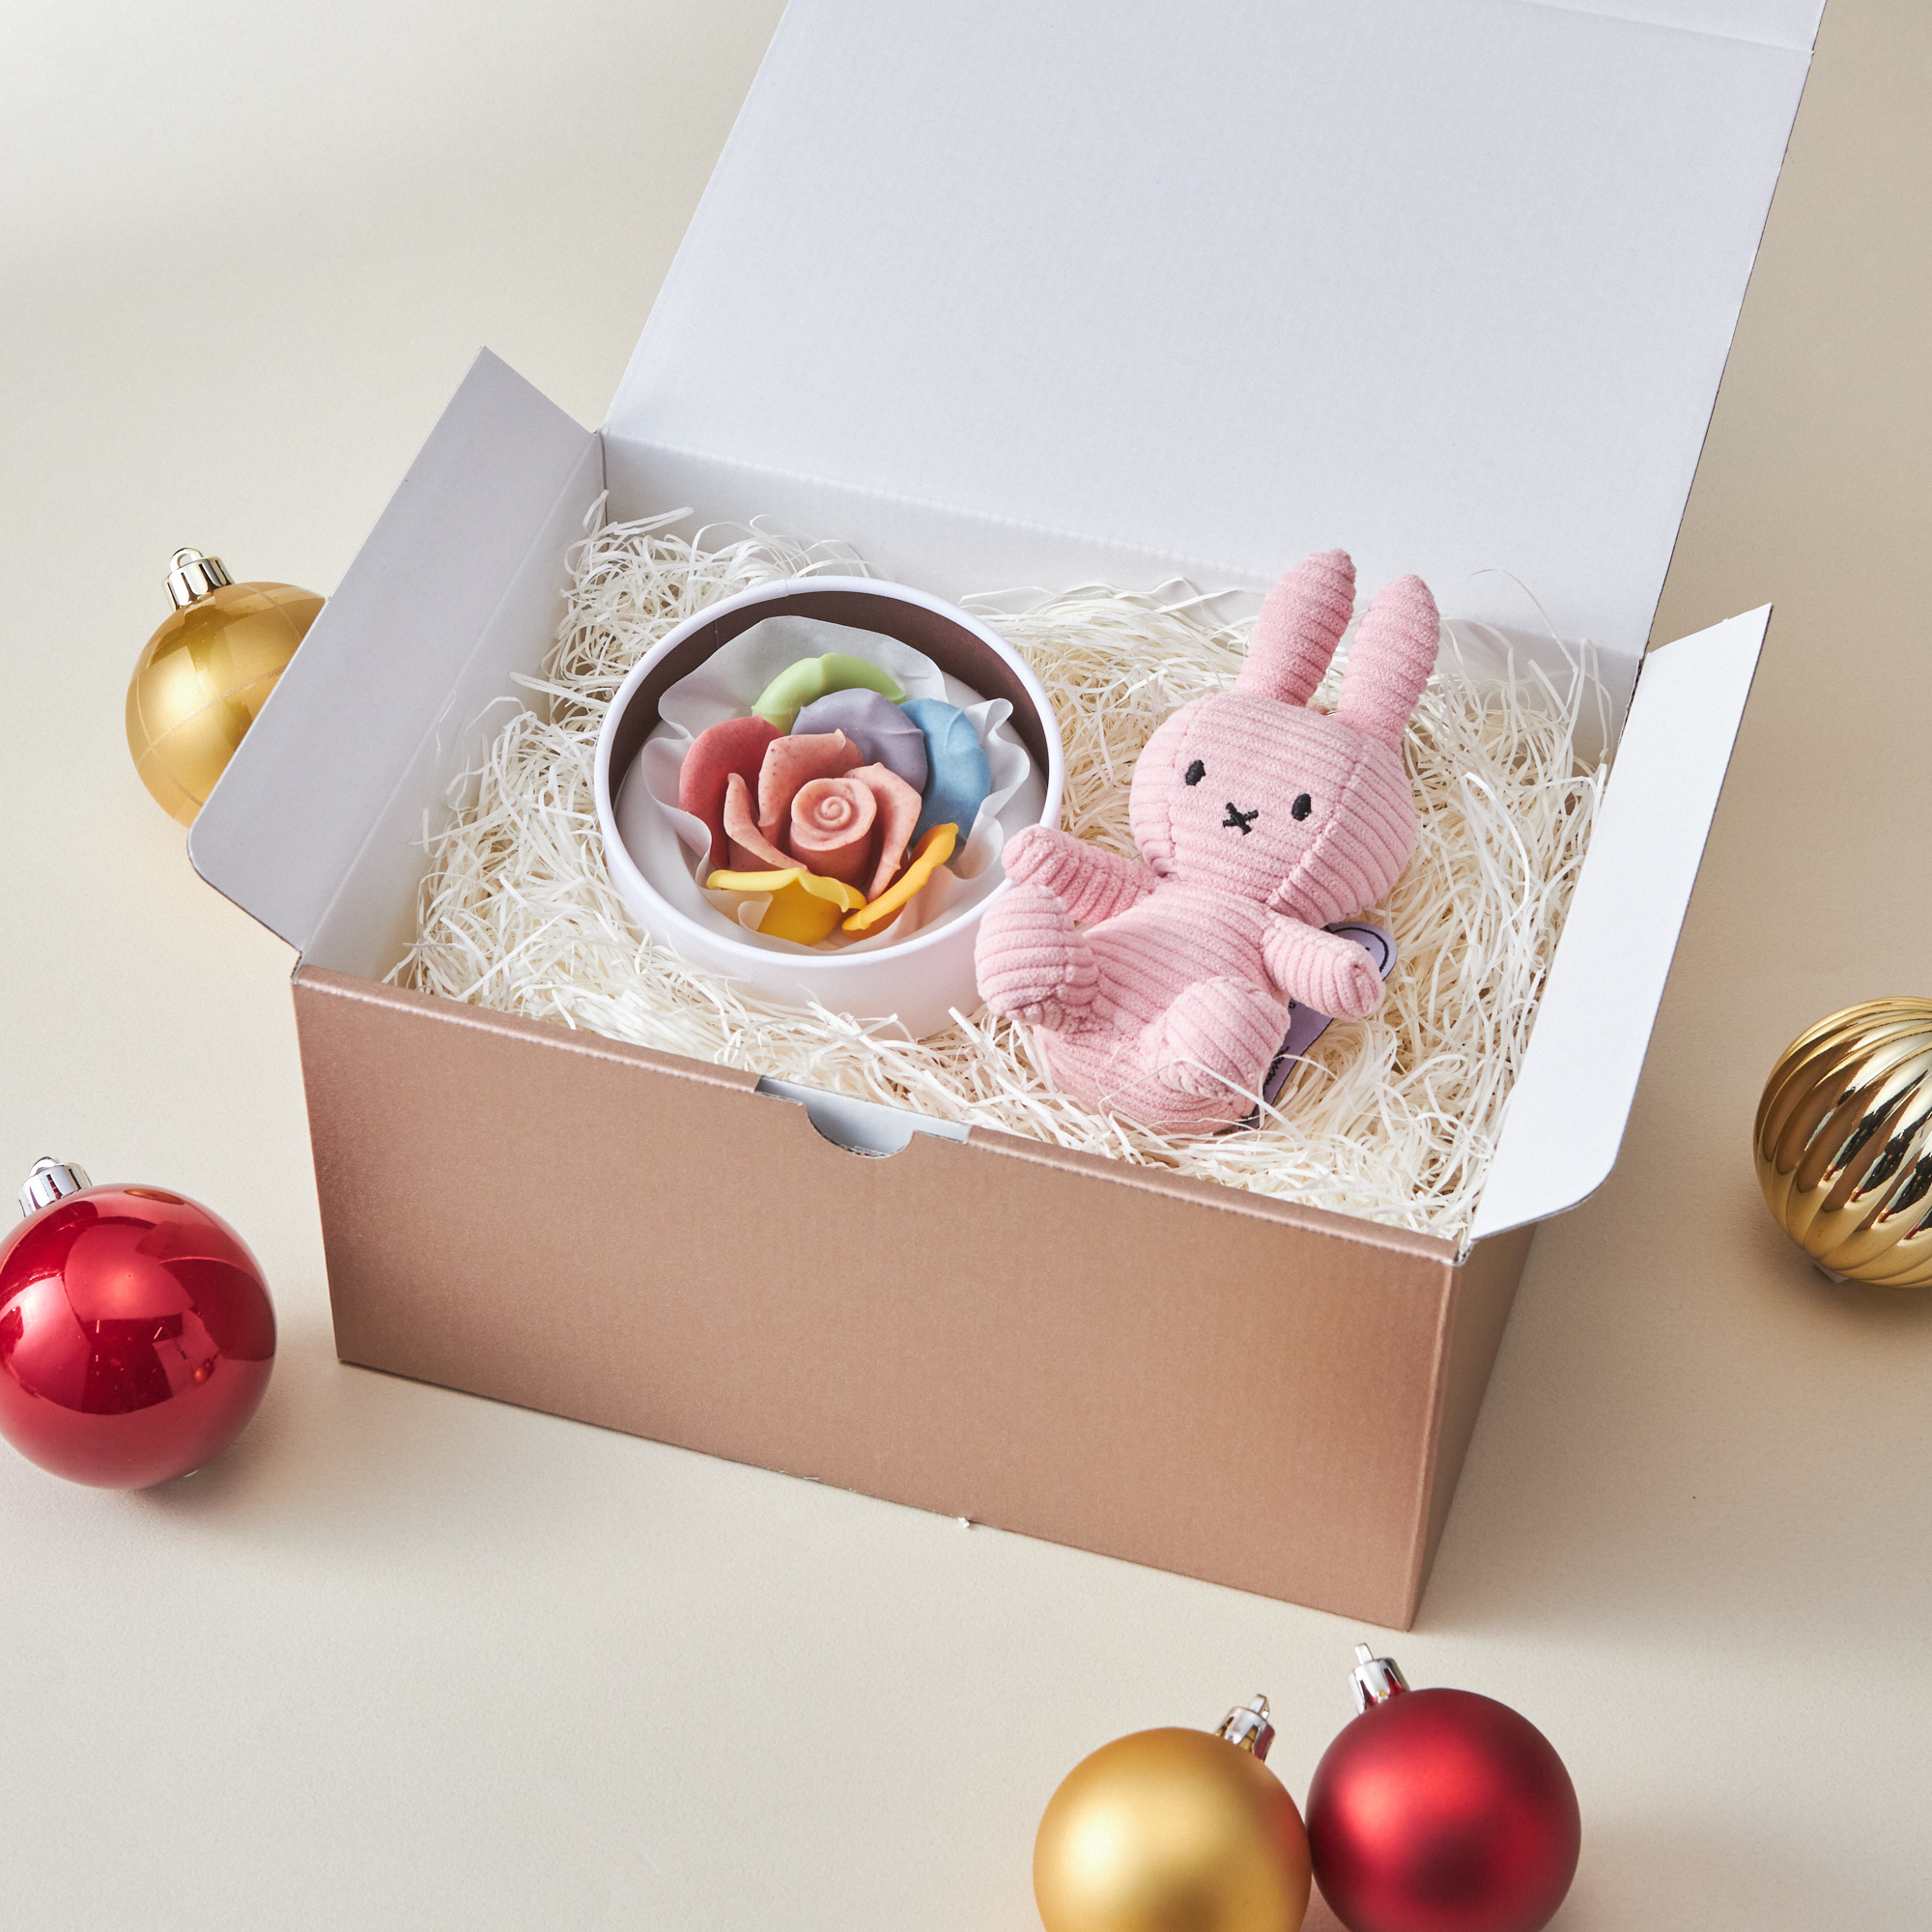 【クリスマスBOX付き】ミッフィーキーチェーンとお花のチョコレート